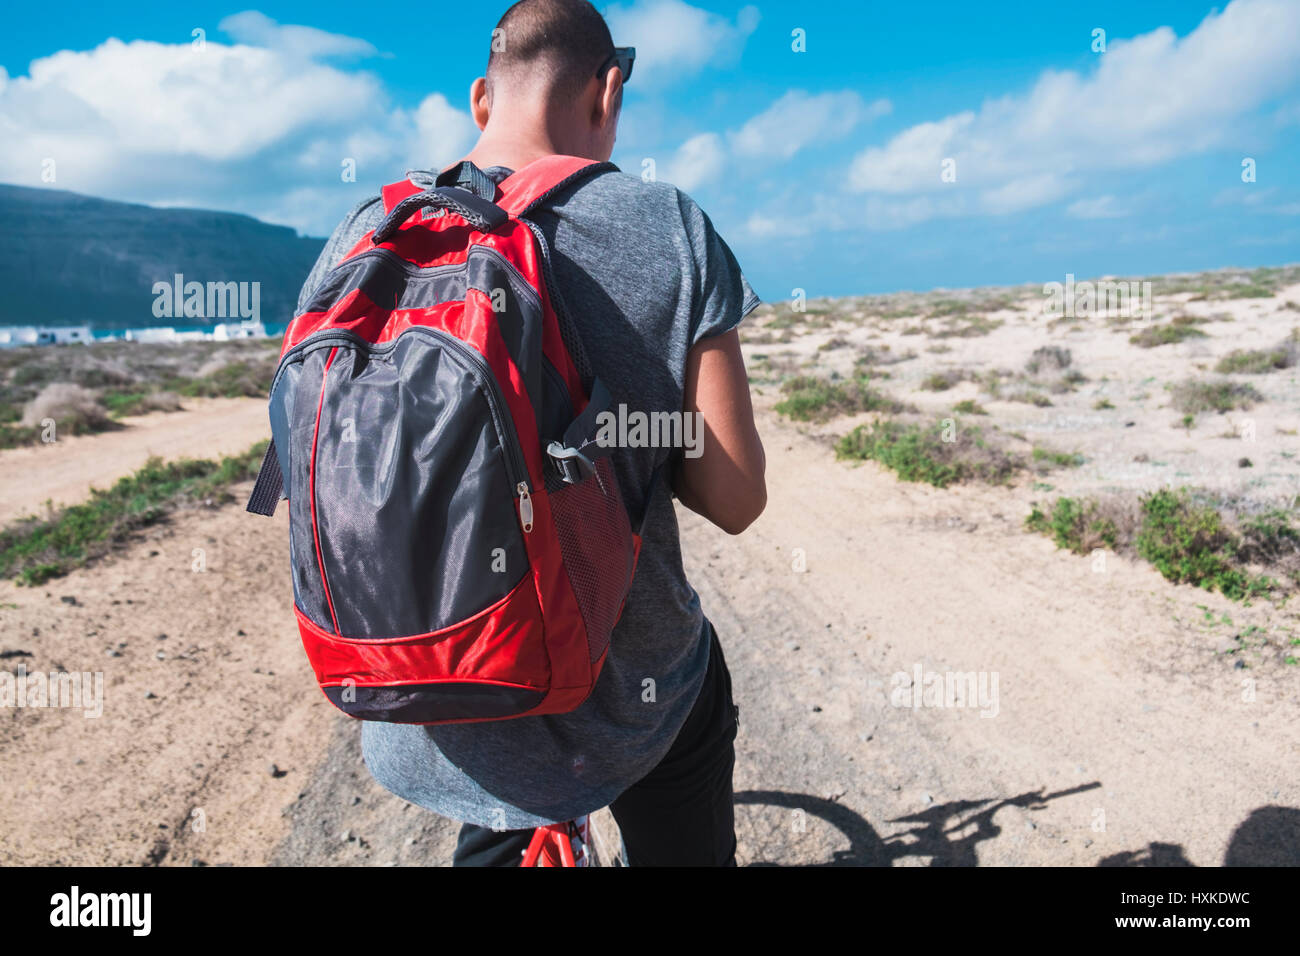 Un hombre joven con una mochila visto desde una moto, se detuvo a mirar a  su smartphone o GPS, en una sucia carretera en La Graciosa, Islas Canarias,  España Fotografía de stock -